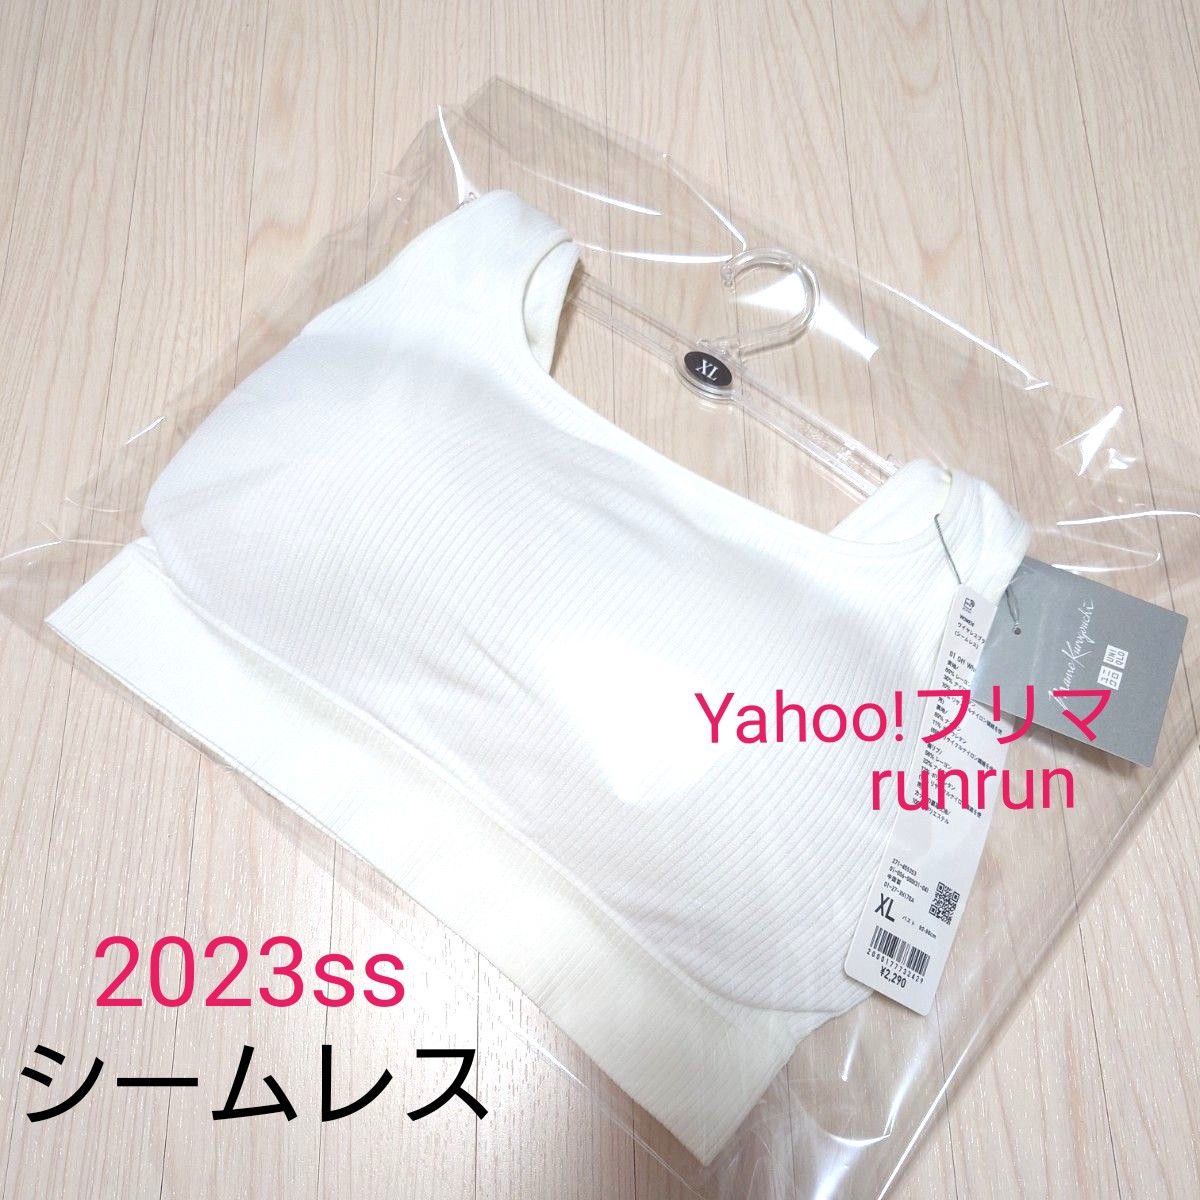 2023モデル ユニクロ マメクロゴウチ ワイヤレスブラ シームレス オフホワイト XL  mame kurogouchi  新品